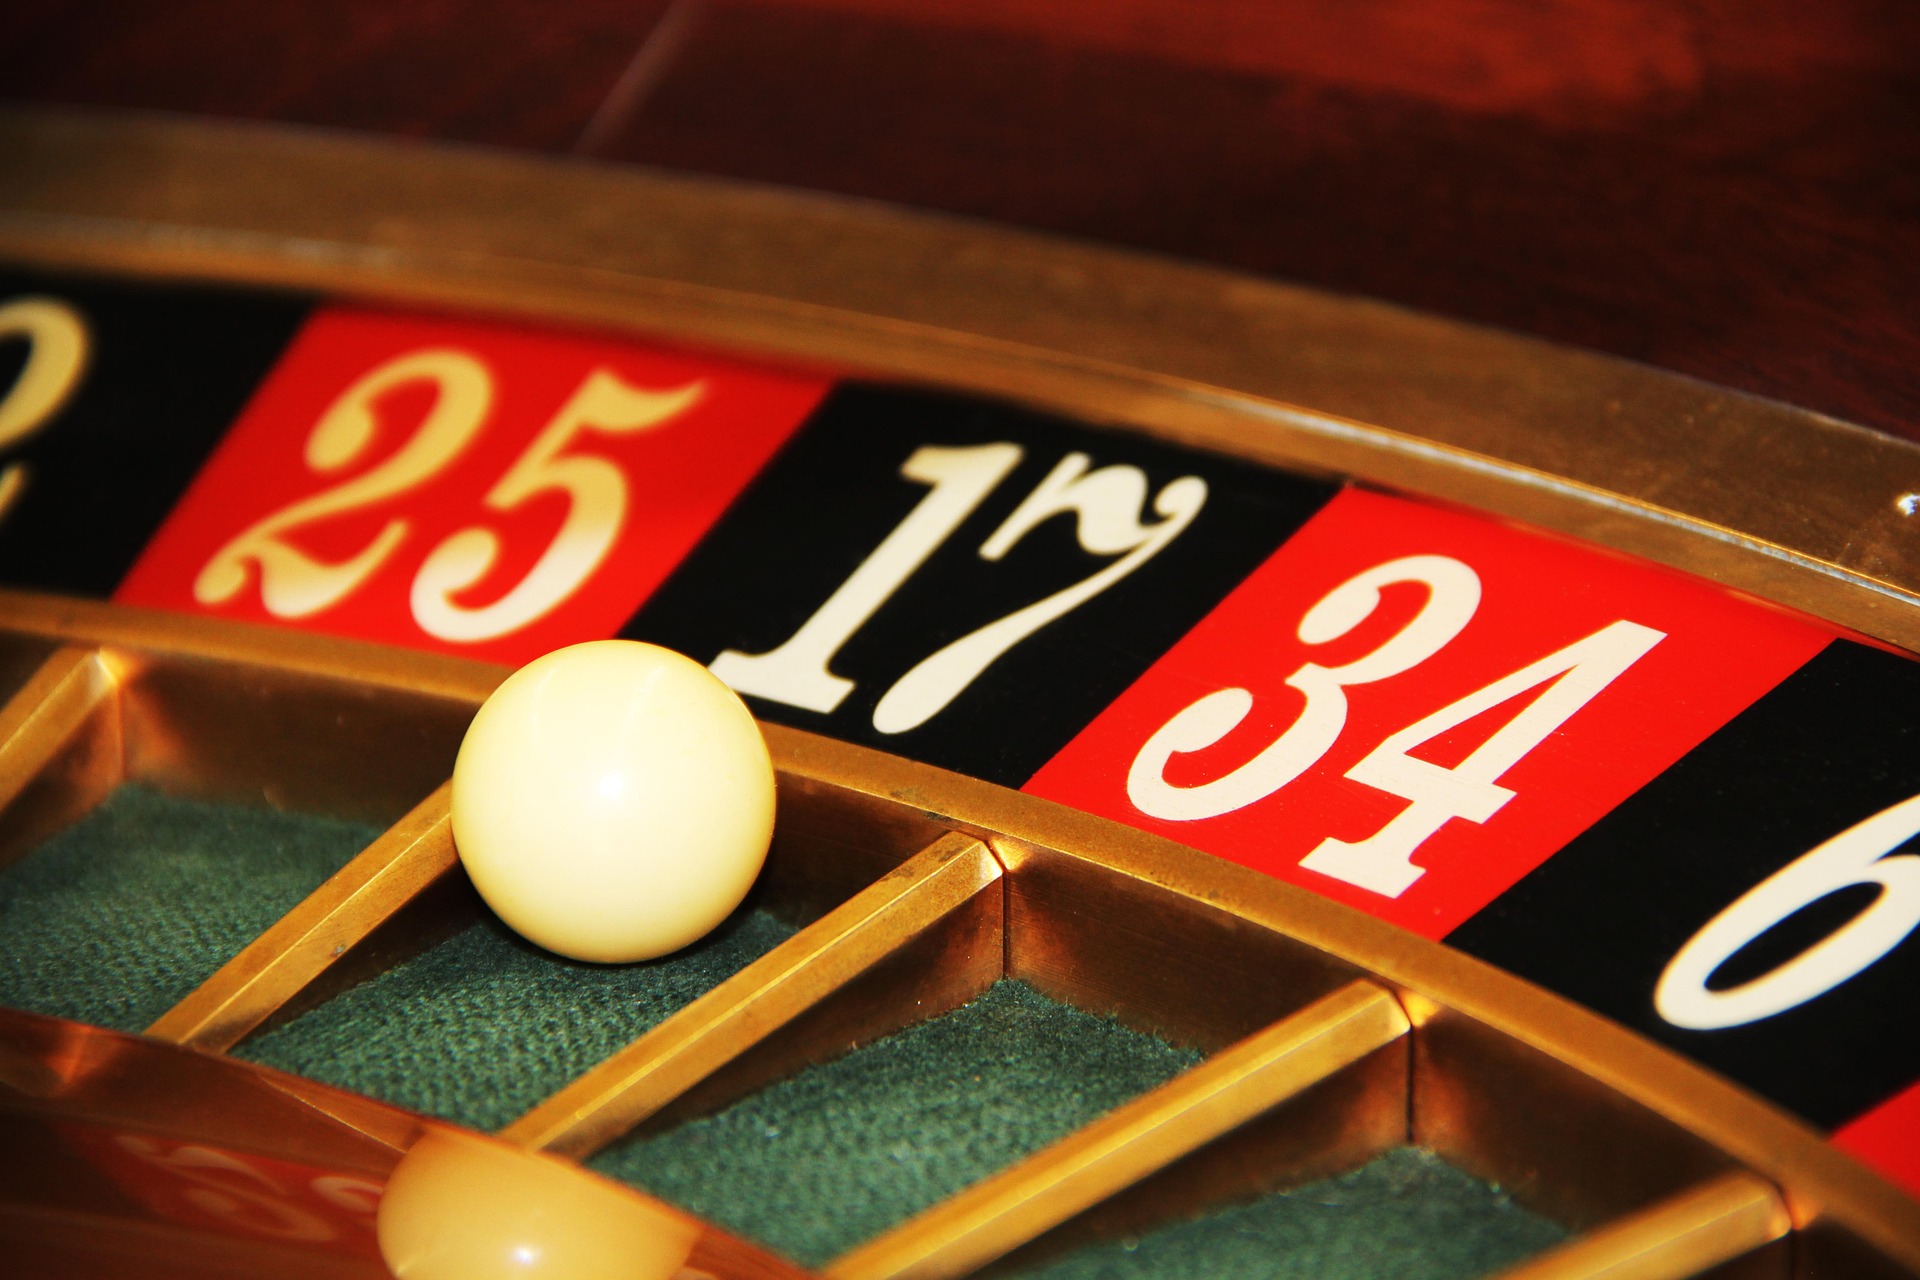 Hoe betrouwbare online casino’s te herkennen die uw gegevens veilig houden